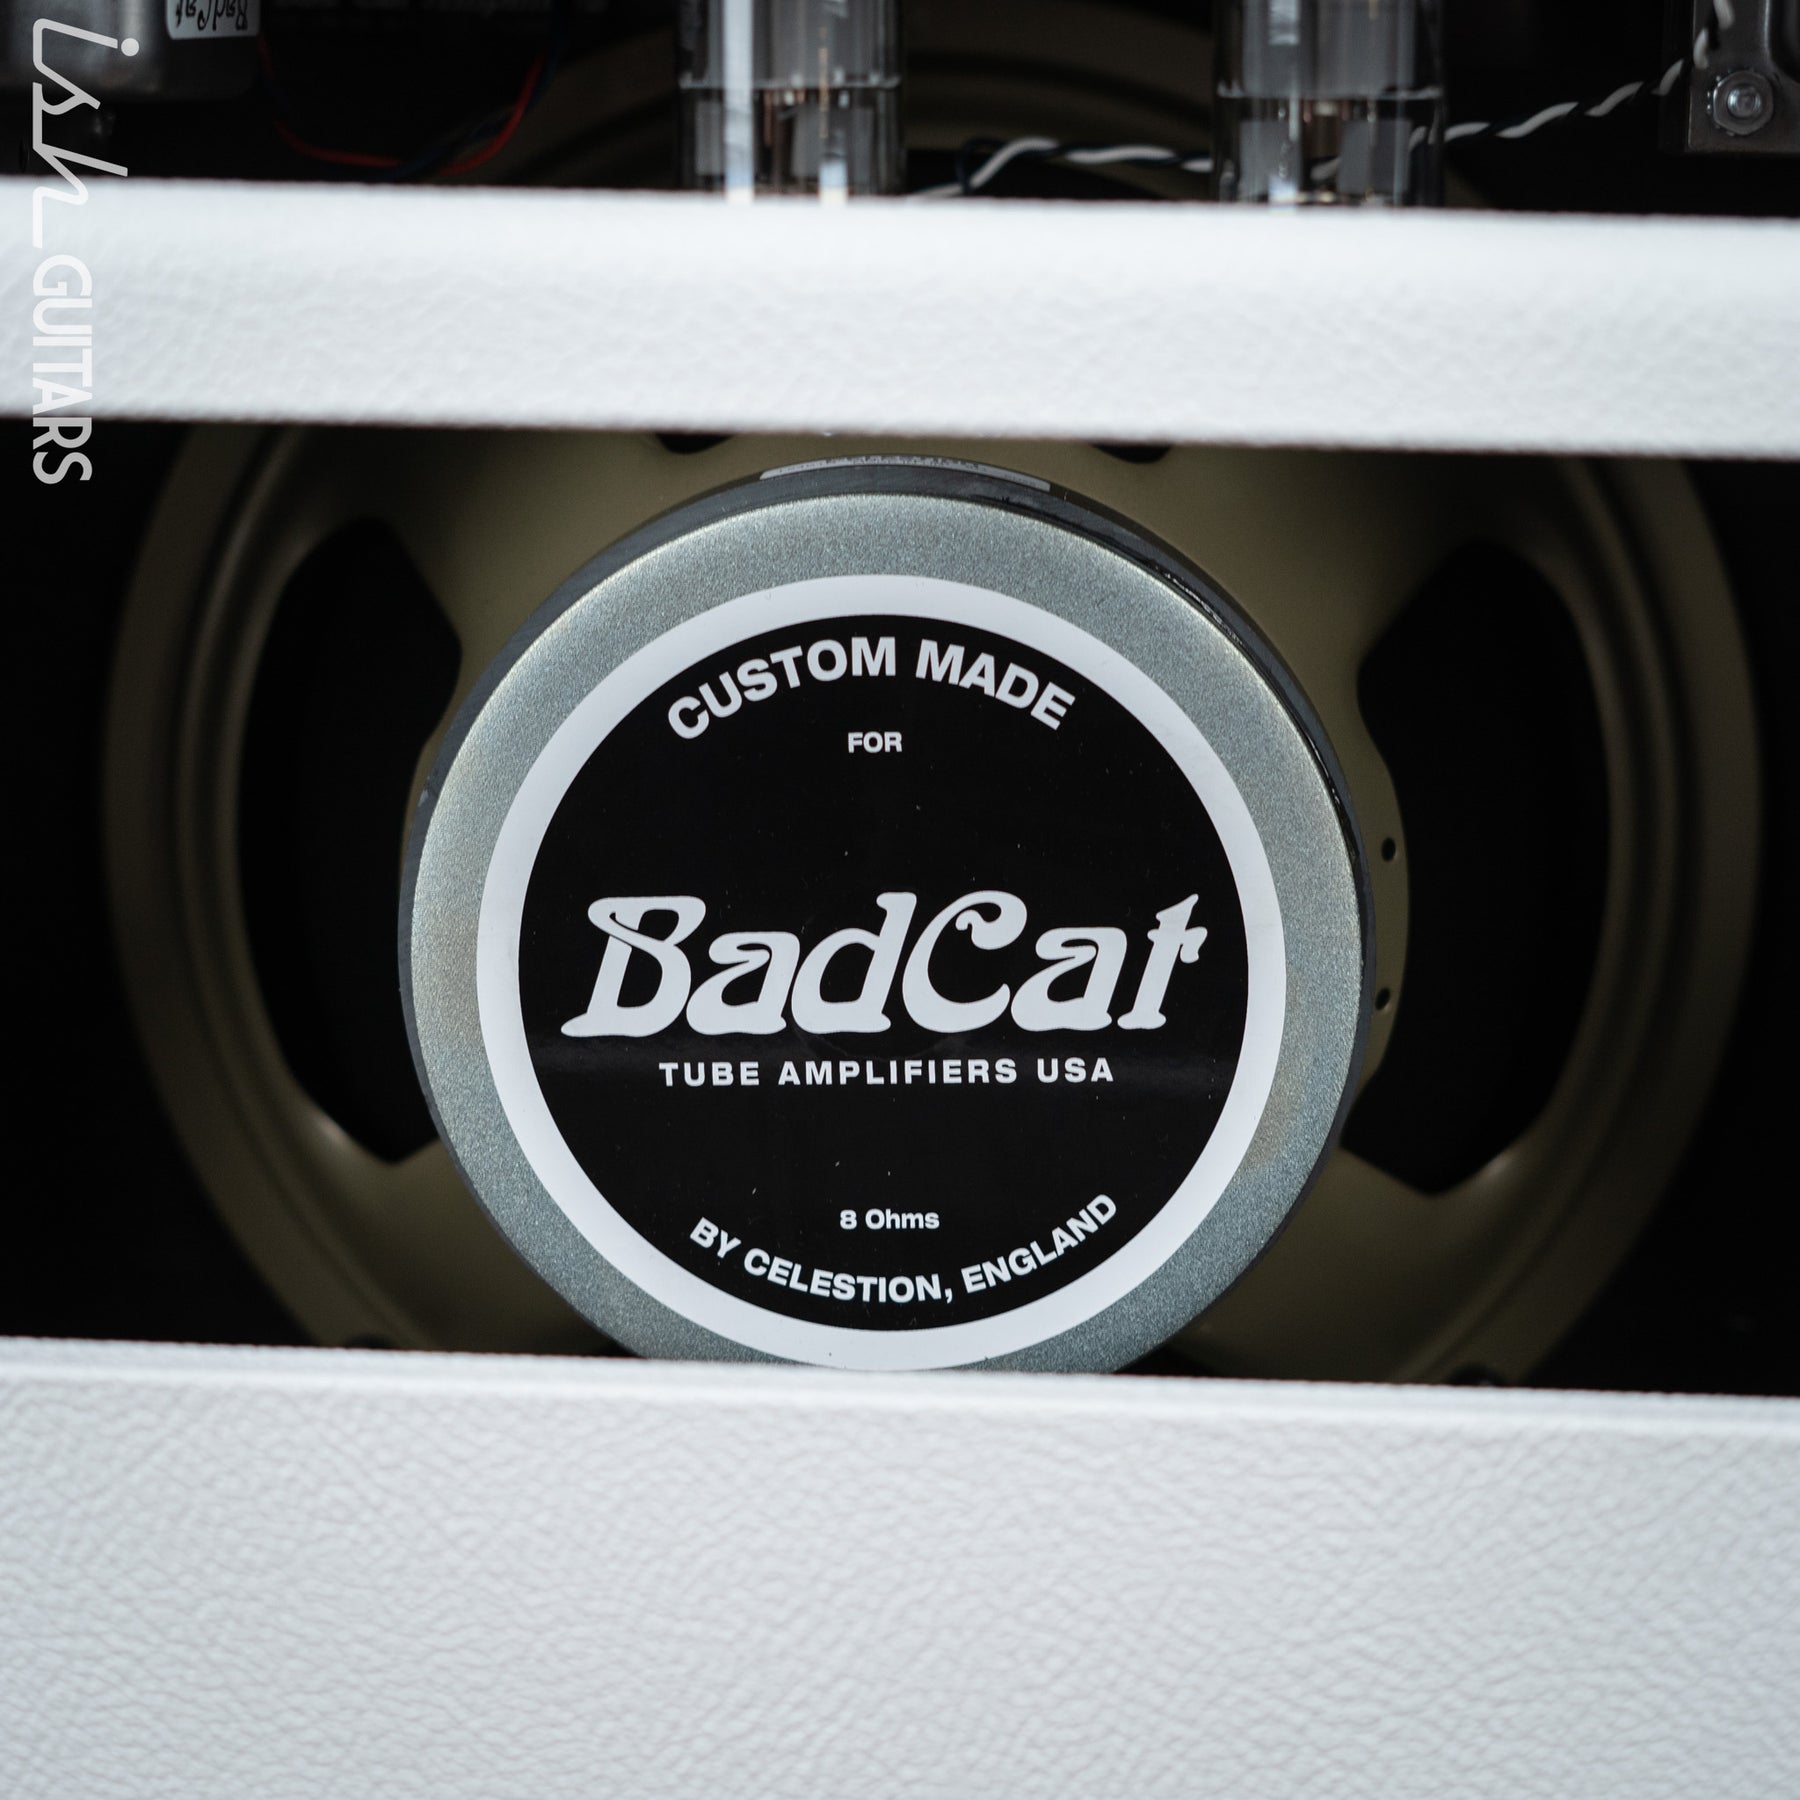 Verão Badcat 2022 - Bad Cat